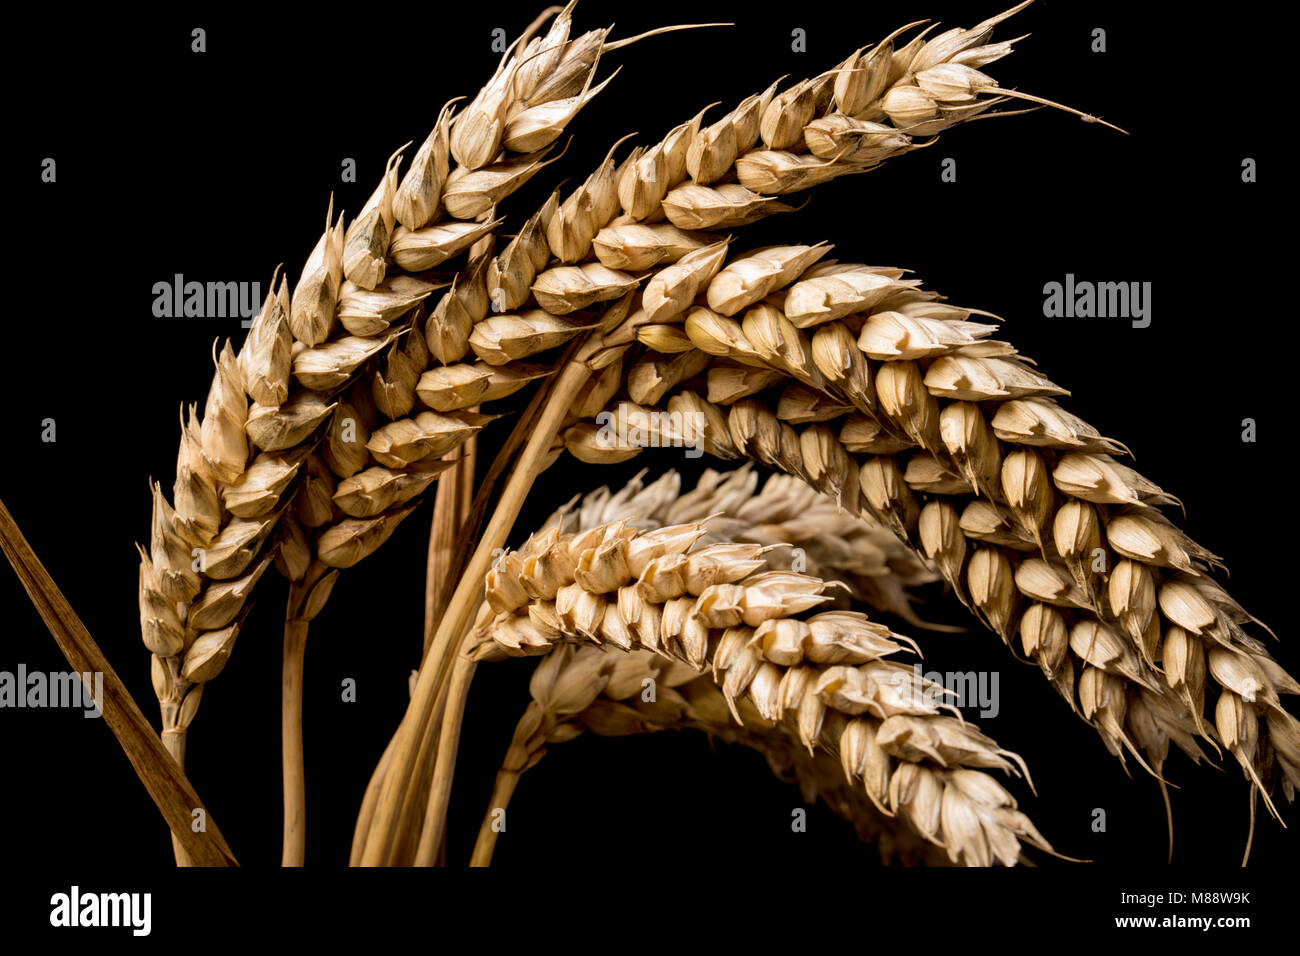 Studio Immagine di grano, Dorset England Regno Unito GB. Fotografato su uno sfondo nero. Foto Stock